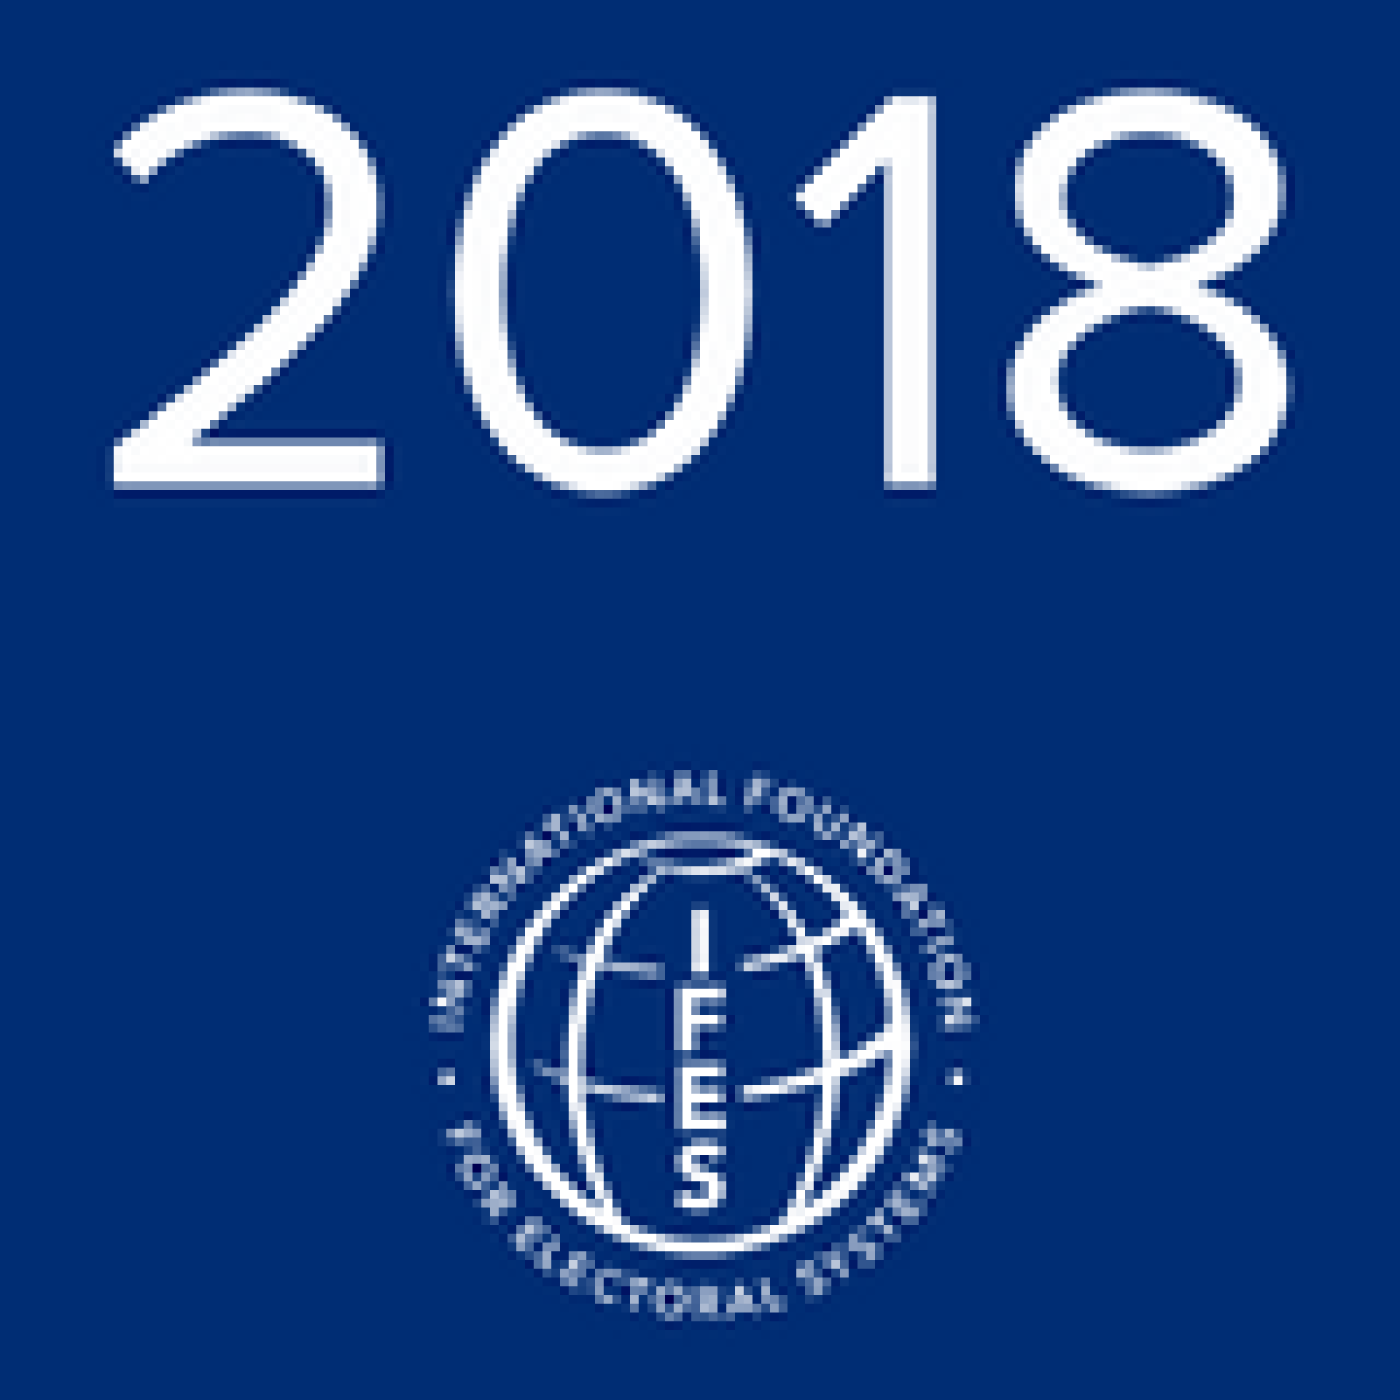 2018 IFES logo 